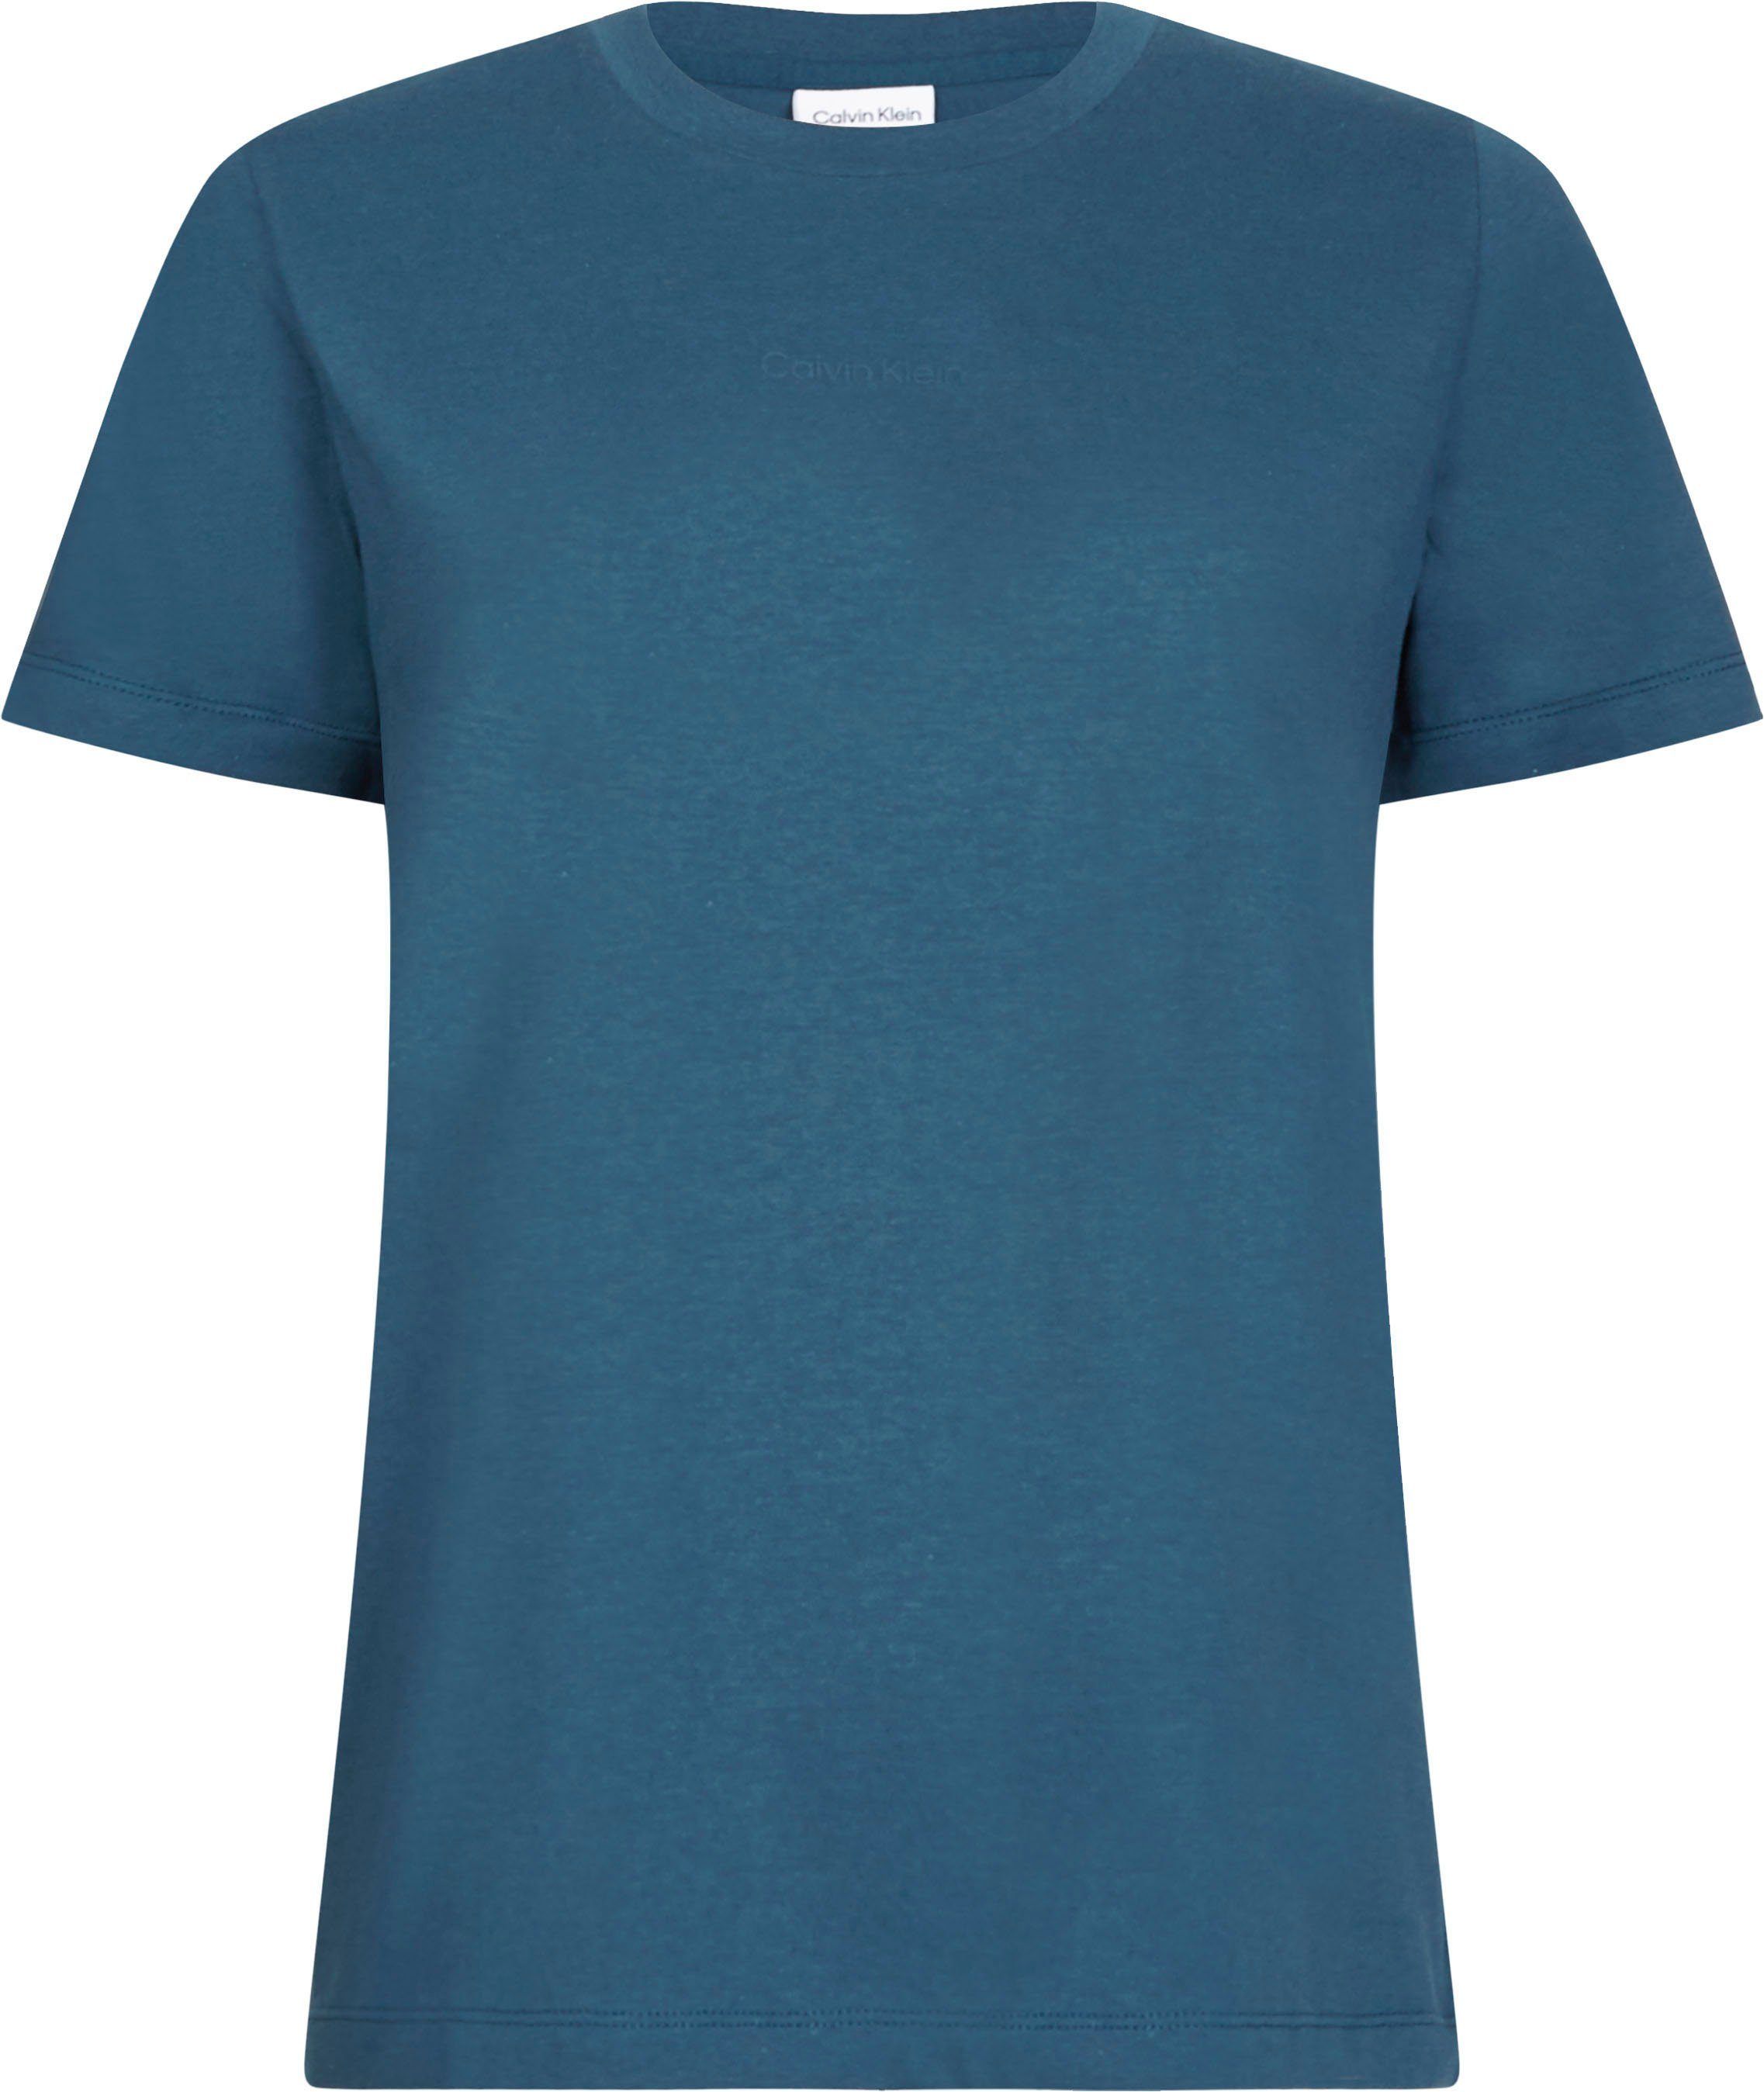 Calvin Klein mit T-SHIRT LOGO Teal INCLUSIVE vorn Mini-Logo (Blau) Klein Curve MICRO (1-tlg) Calvin Rundhalsshirt tonigem Ocean